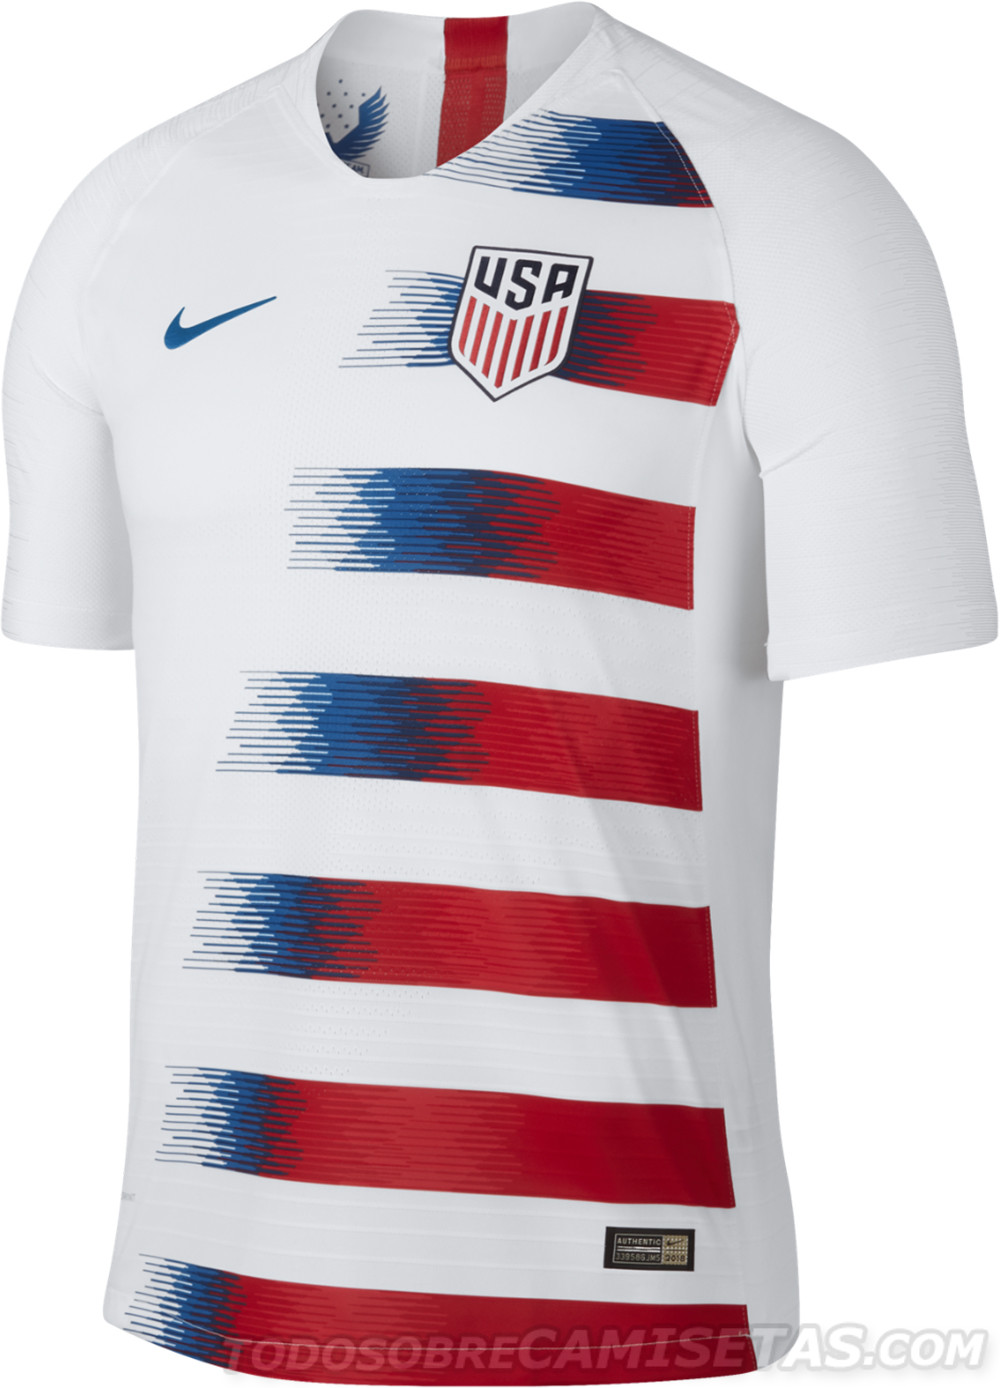 OFFICIAL: USA 2018 Nike - Todo Sobre Camisetas